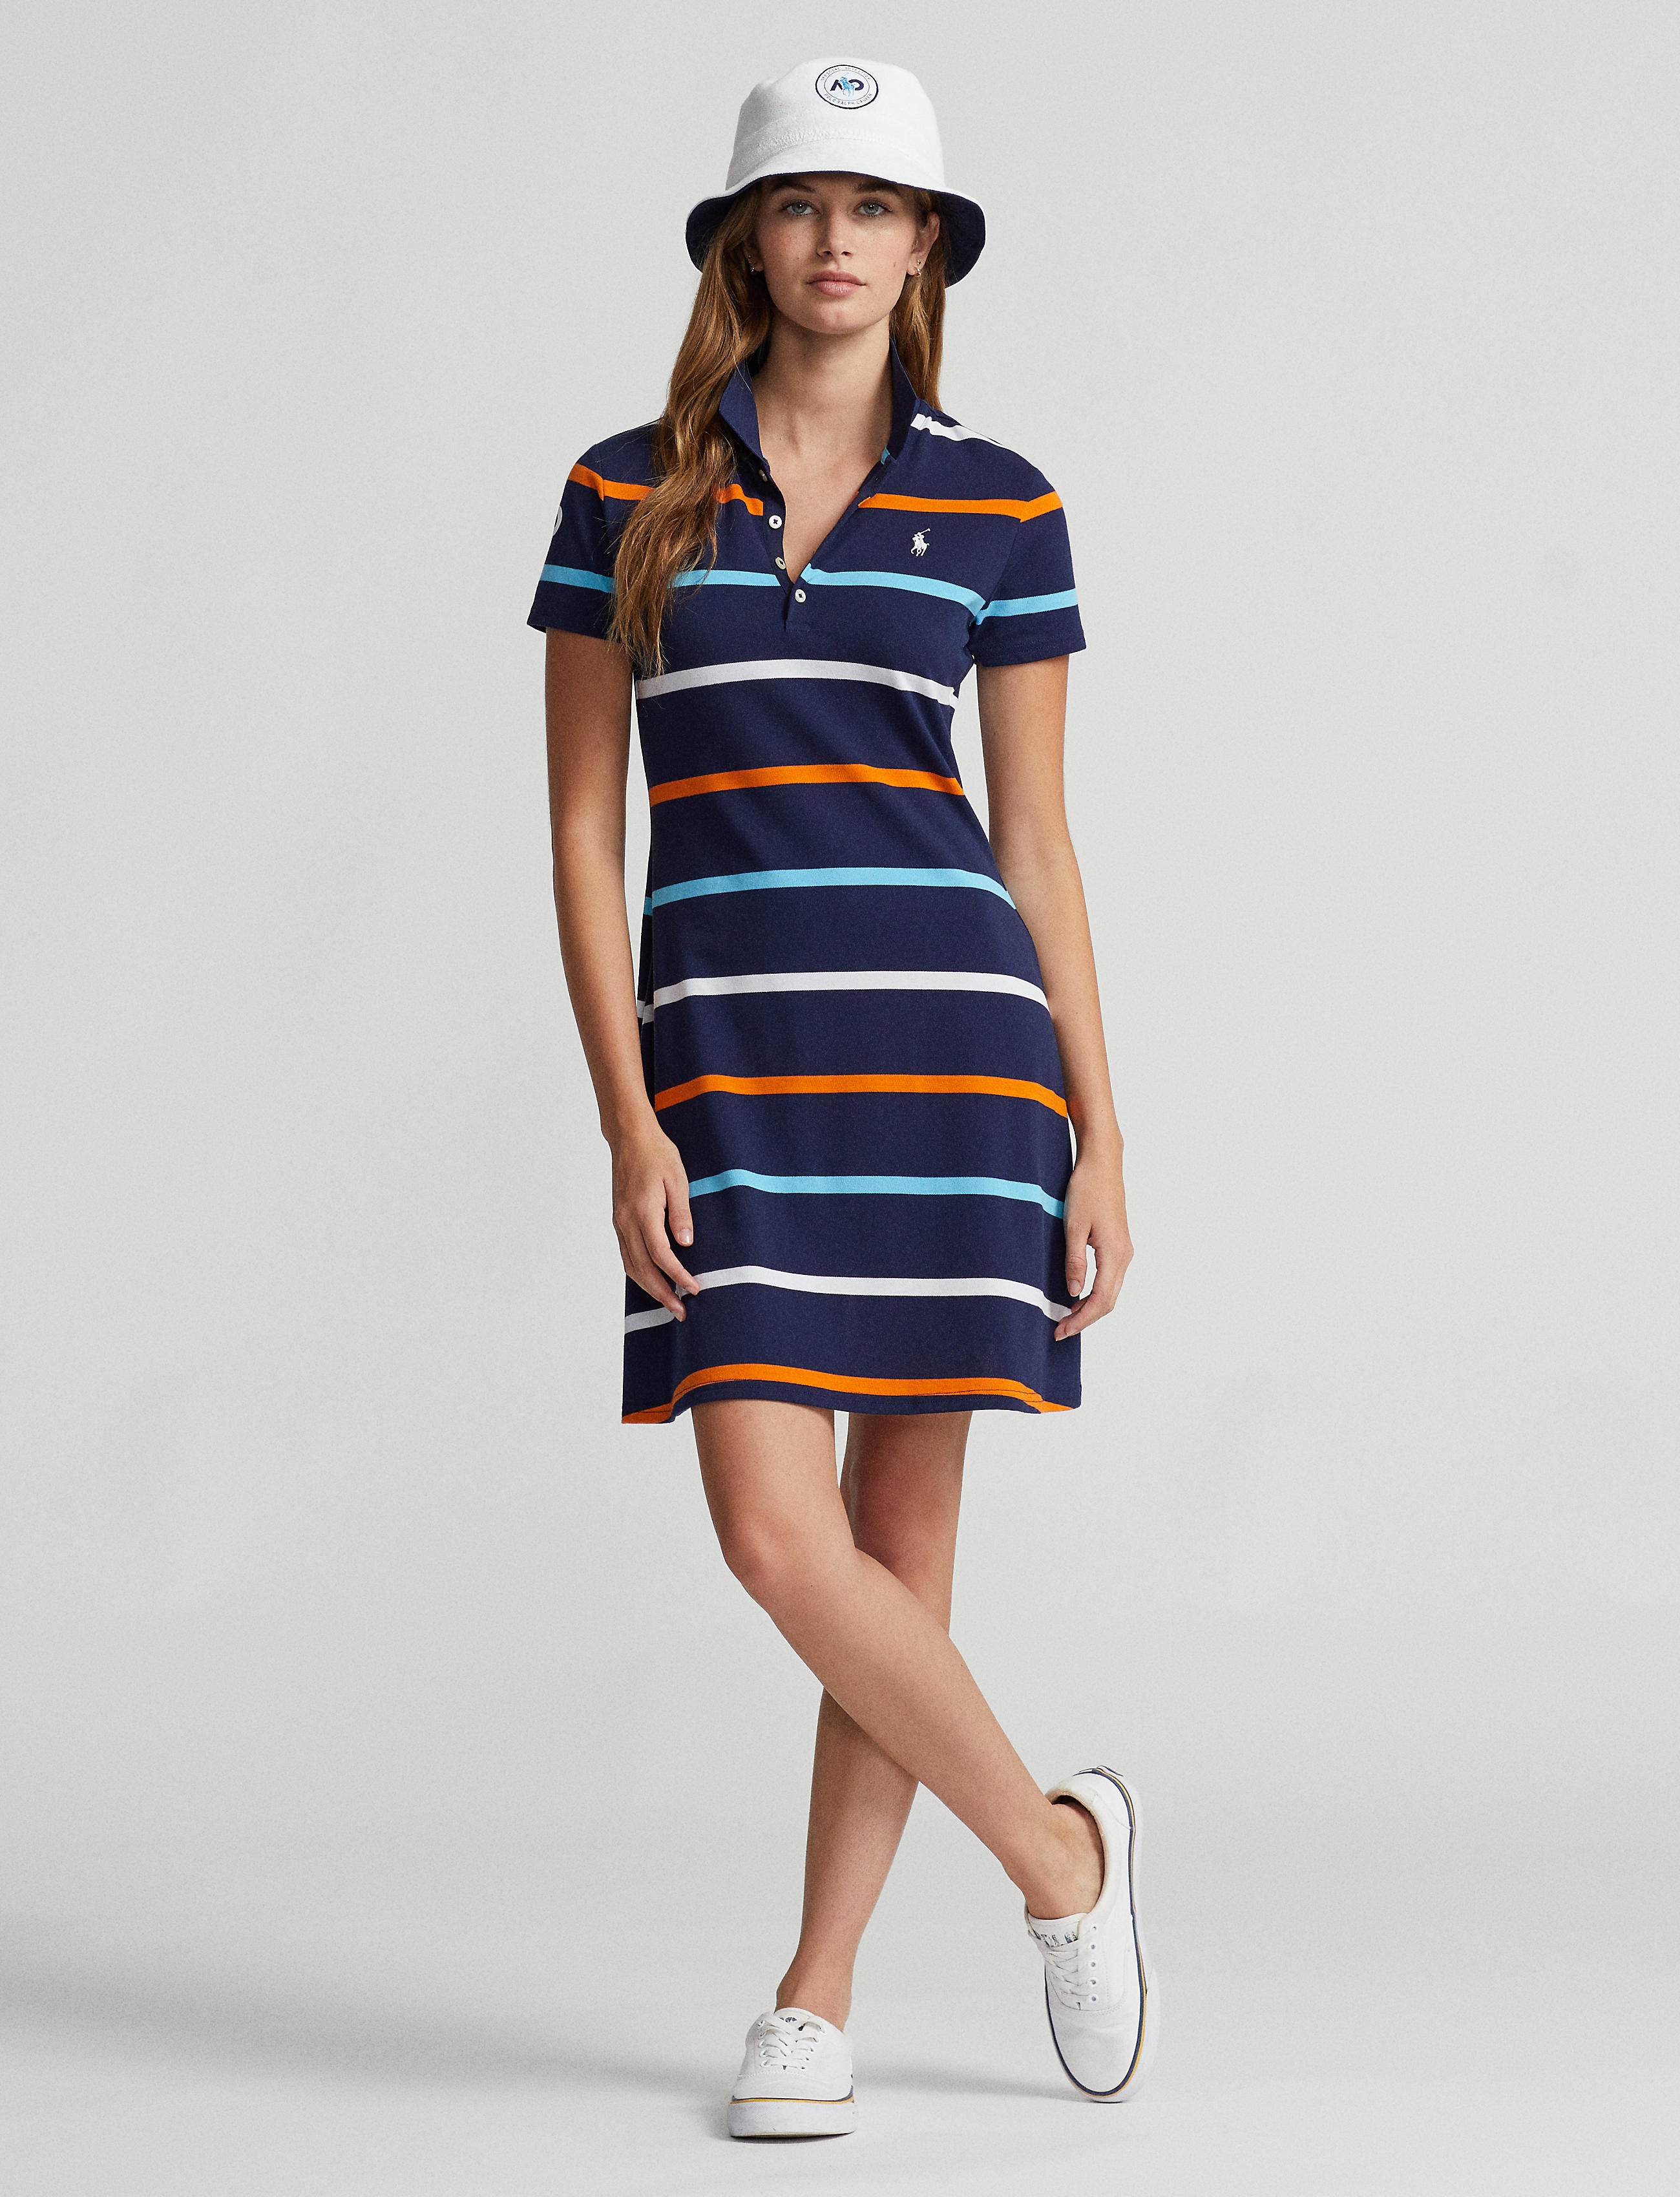 Women's Polo Dress Striped